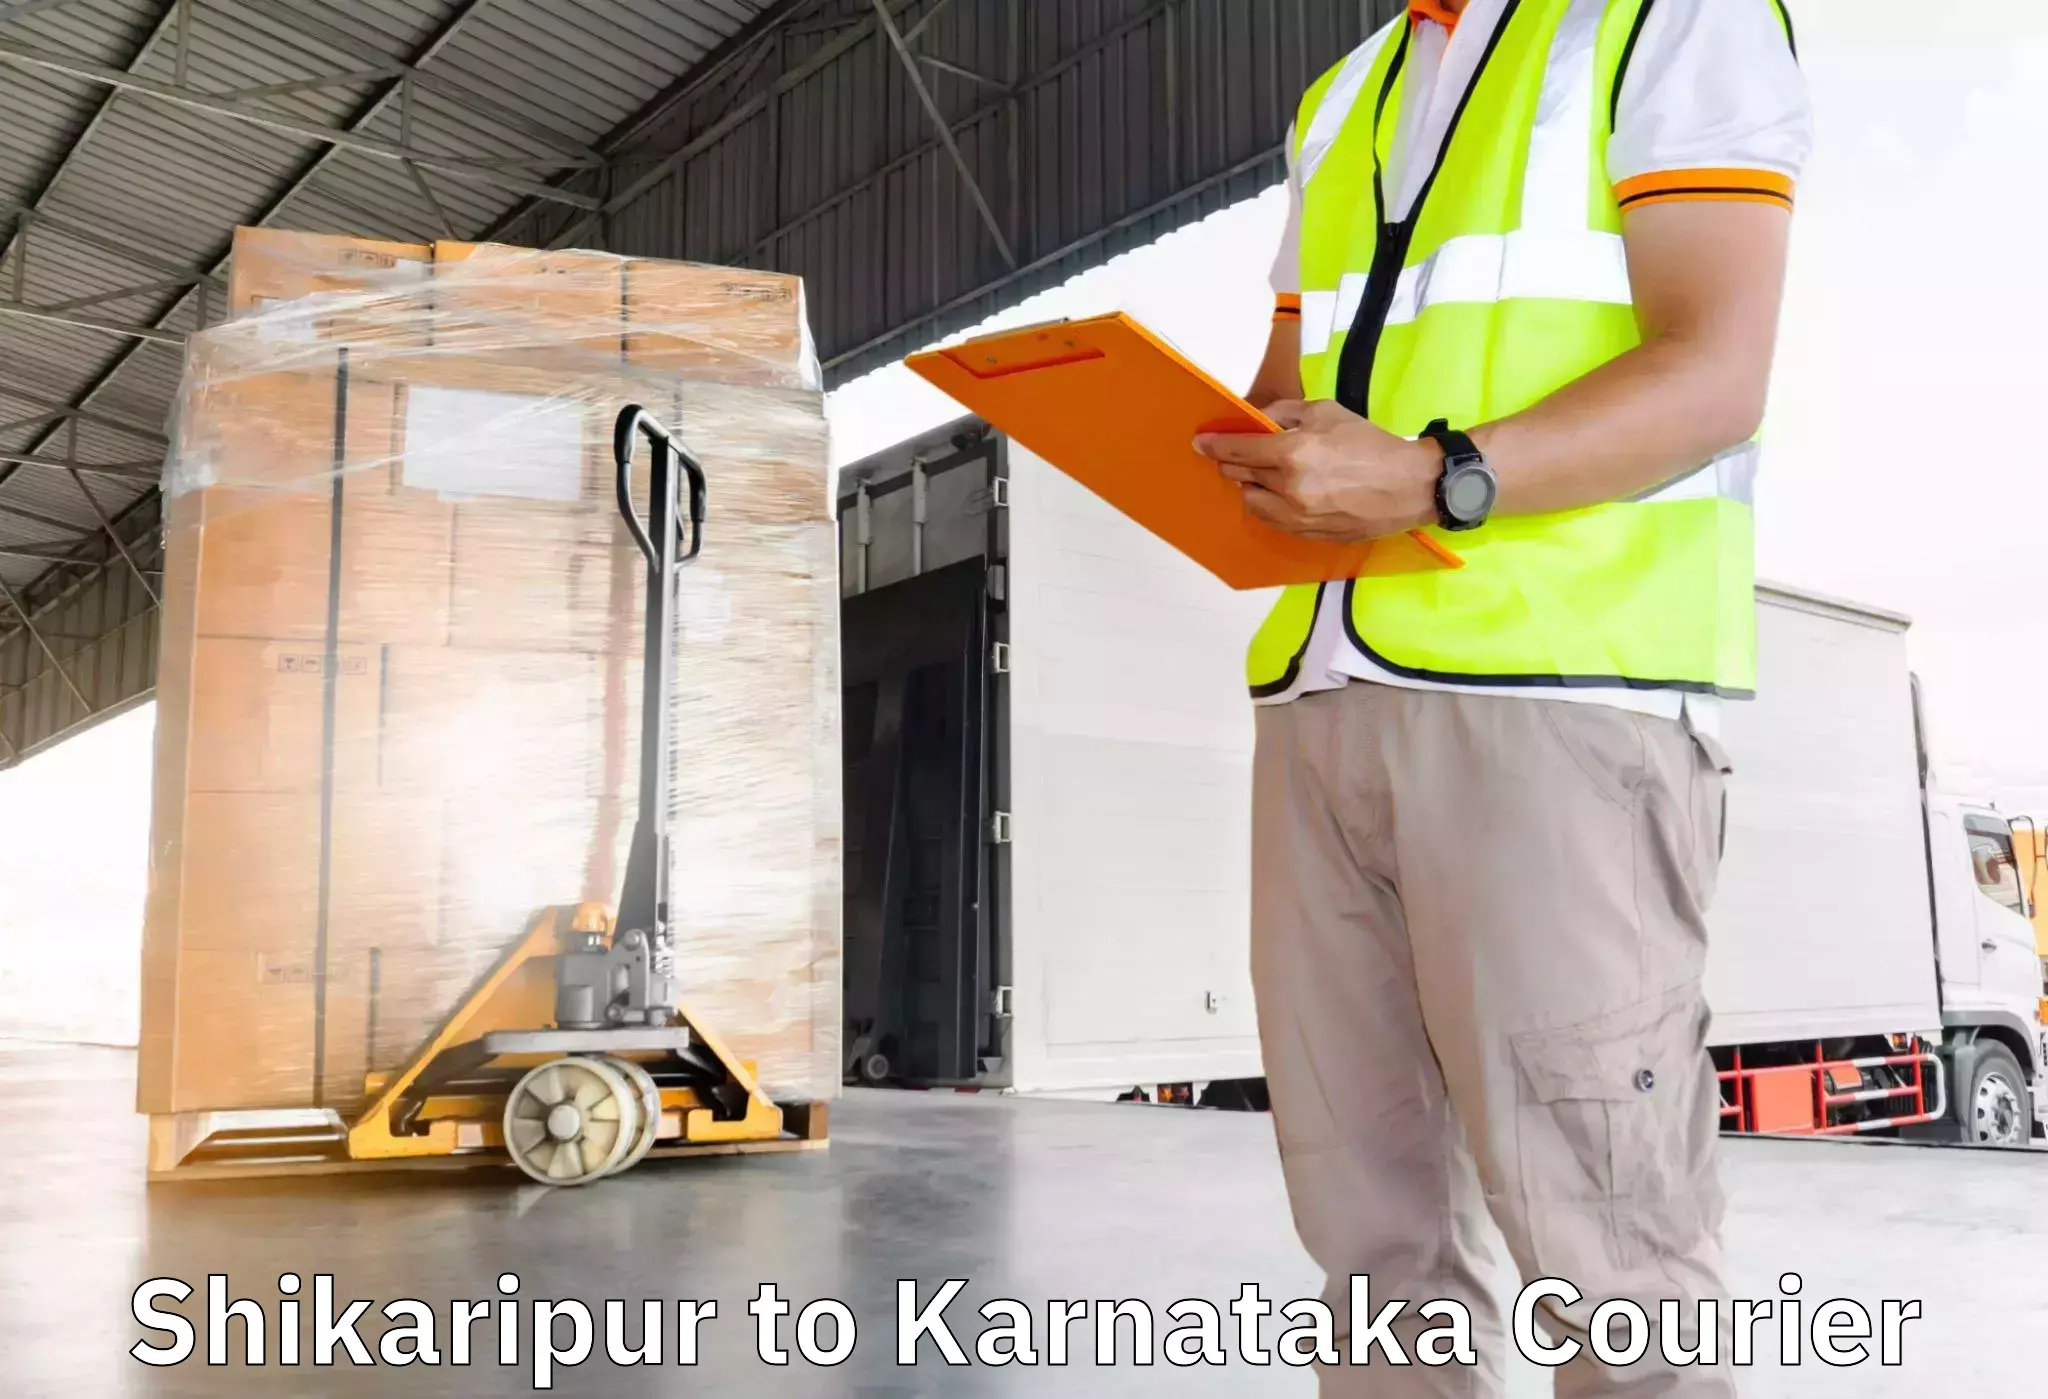 Furniture transport professionals Shikaripur to Srirangapatna